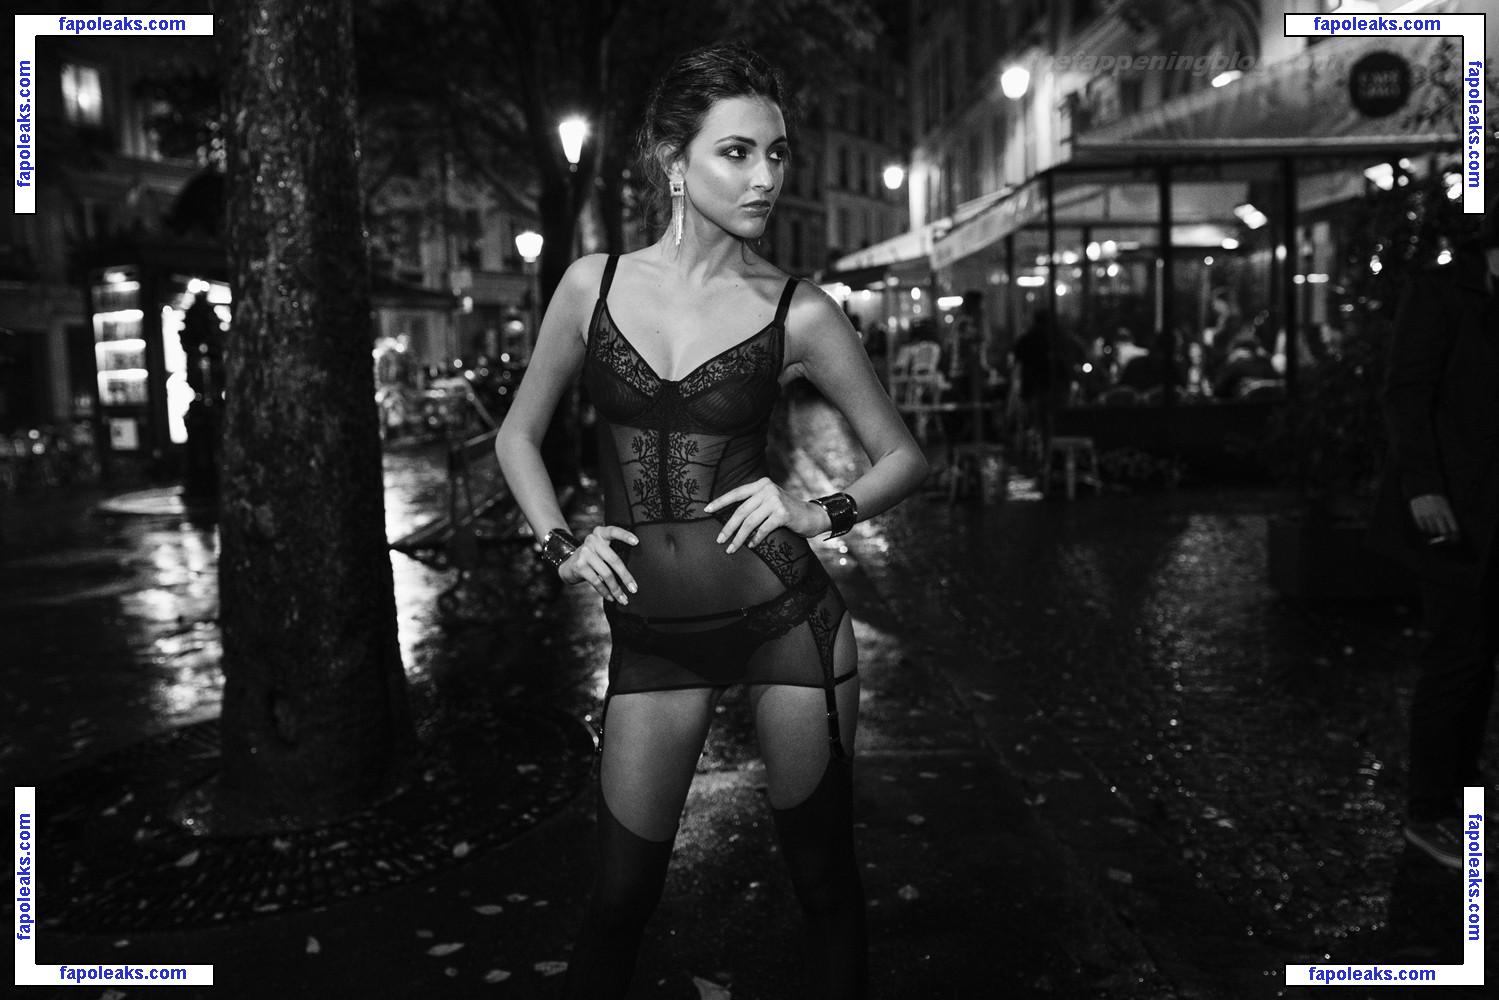 Erika Albonetti / erika.albonetti nude photo #0188 from OnlyFans